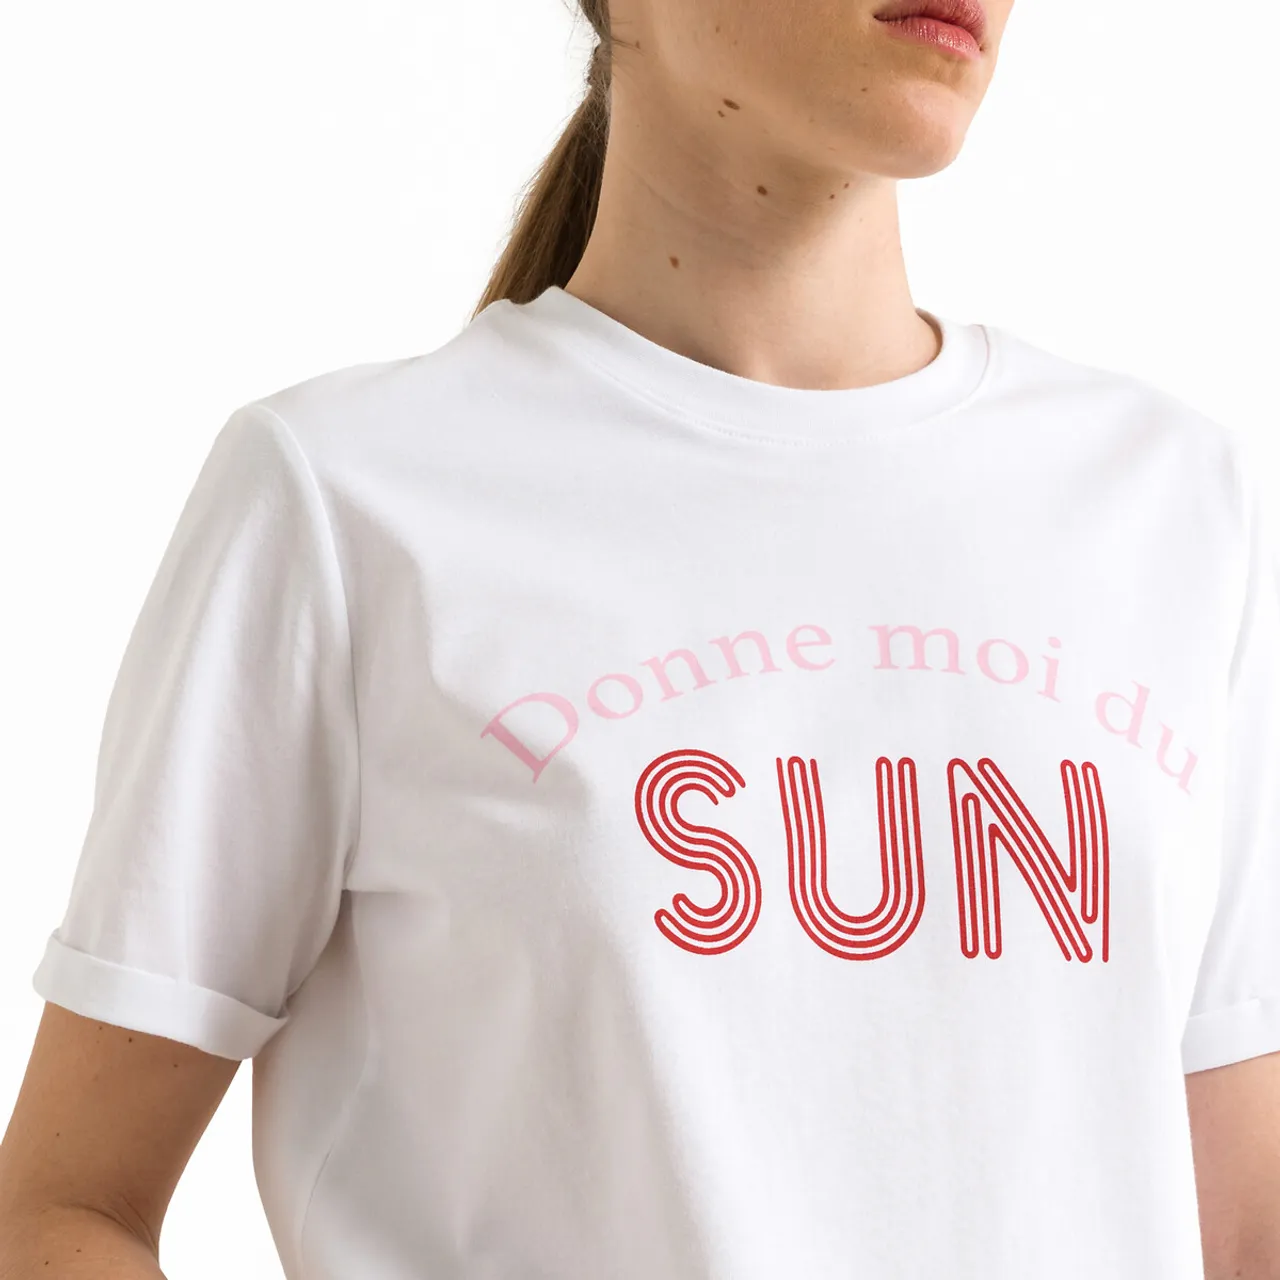 T-shirt met korte mouwen, motief vooraan